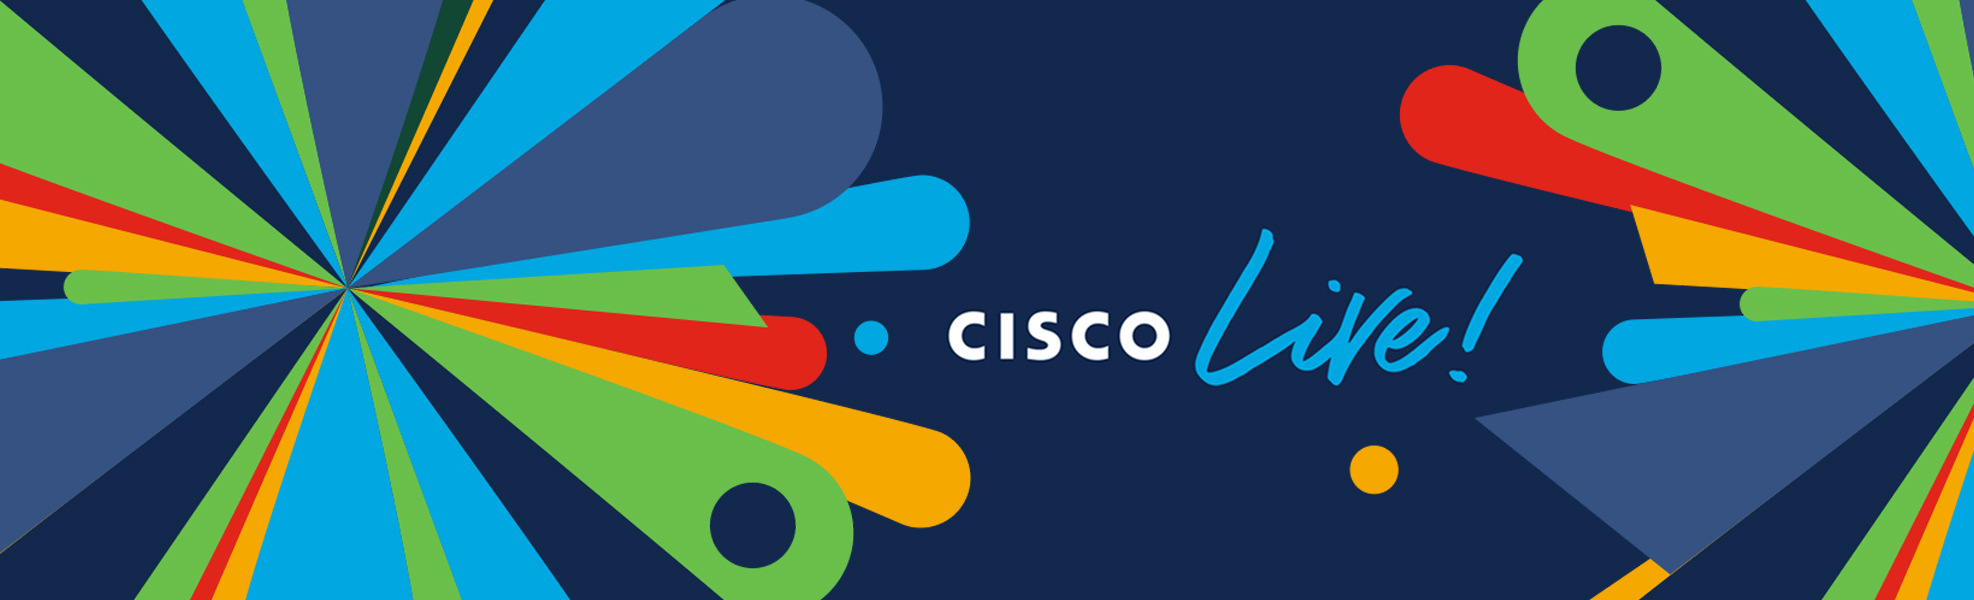 Cisco Live 2021